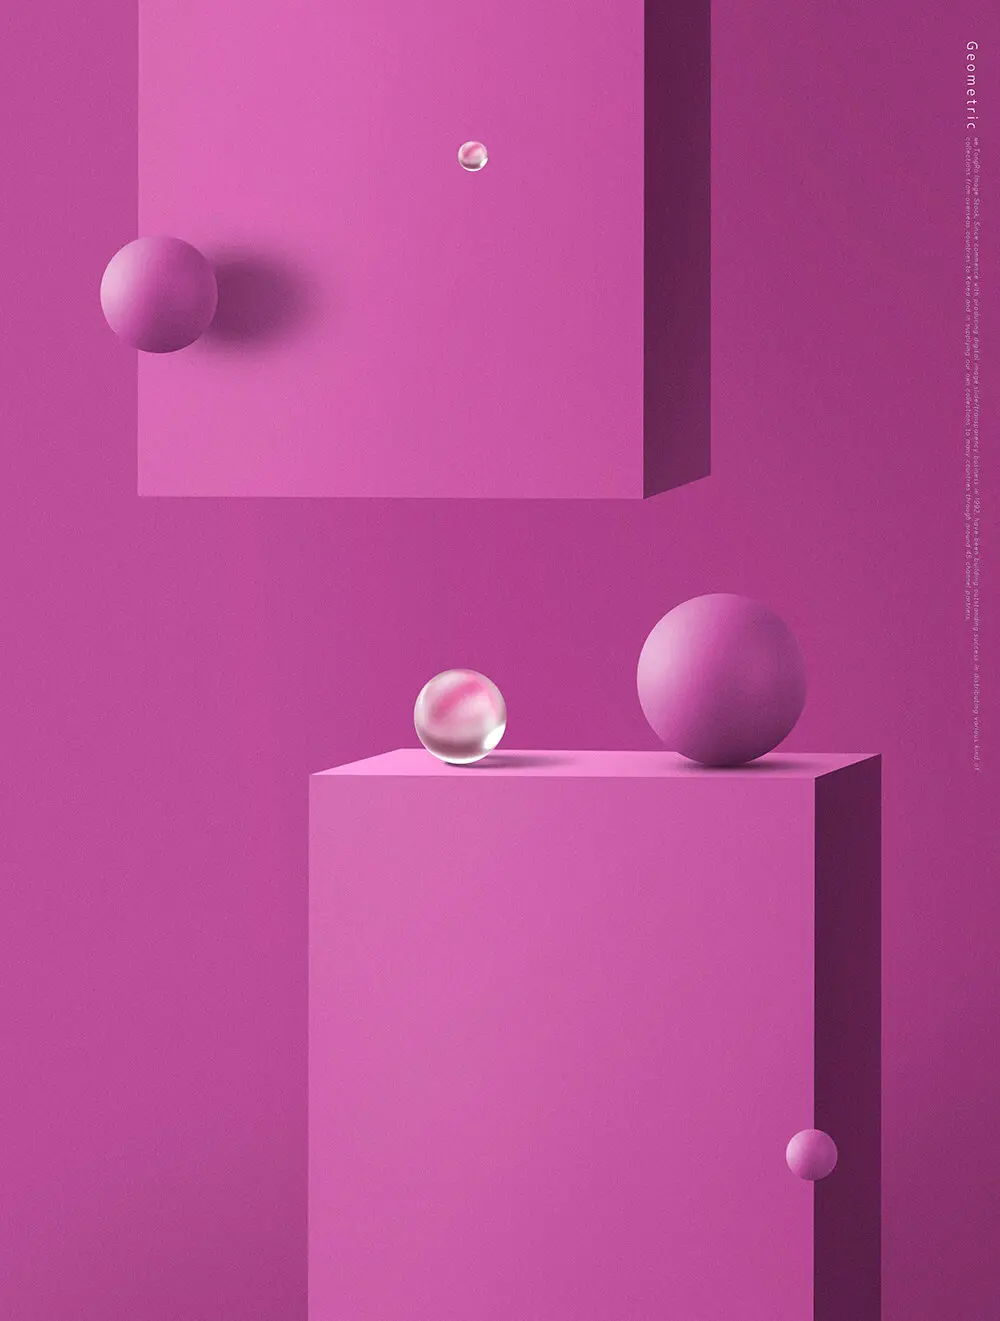 圆球几何场景元素简约紫色海报背景素材 (psd)插图